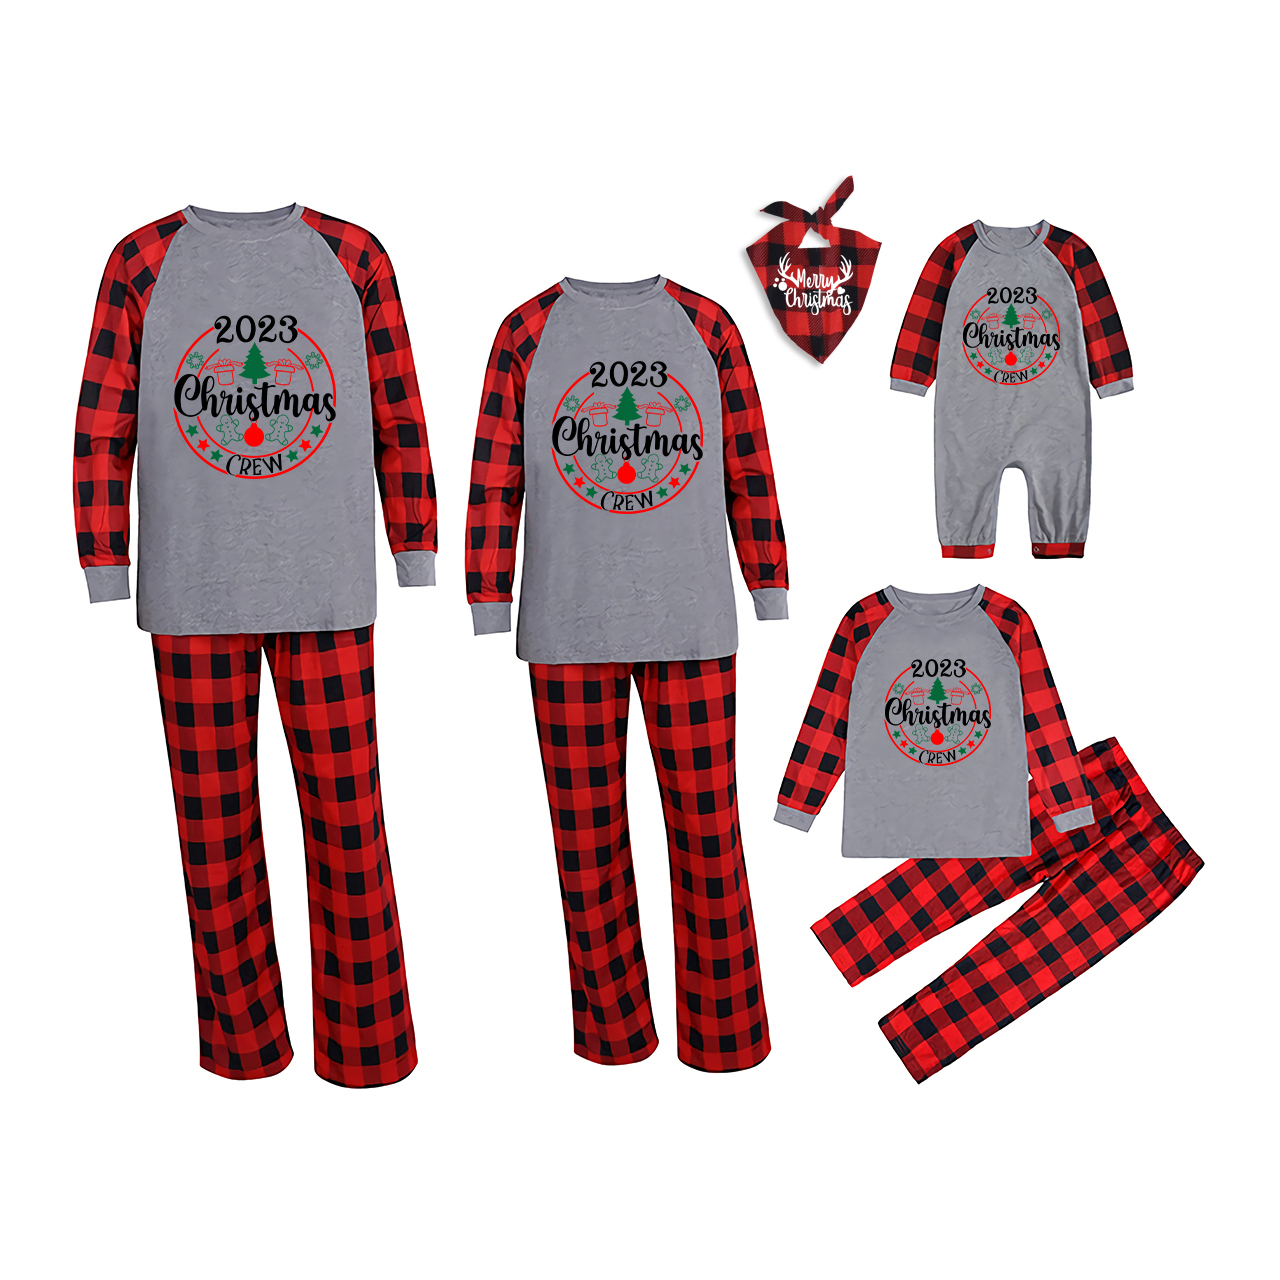 2023 Christmas Crew Family Matching Pajamas